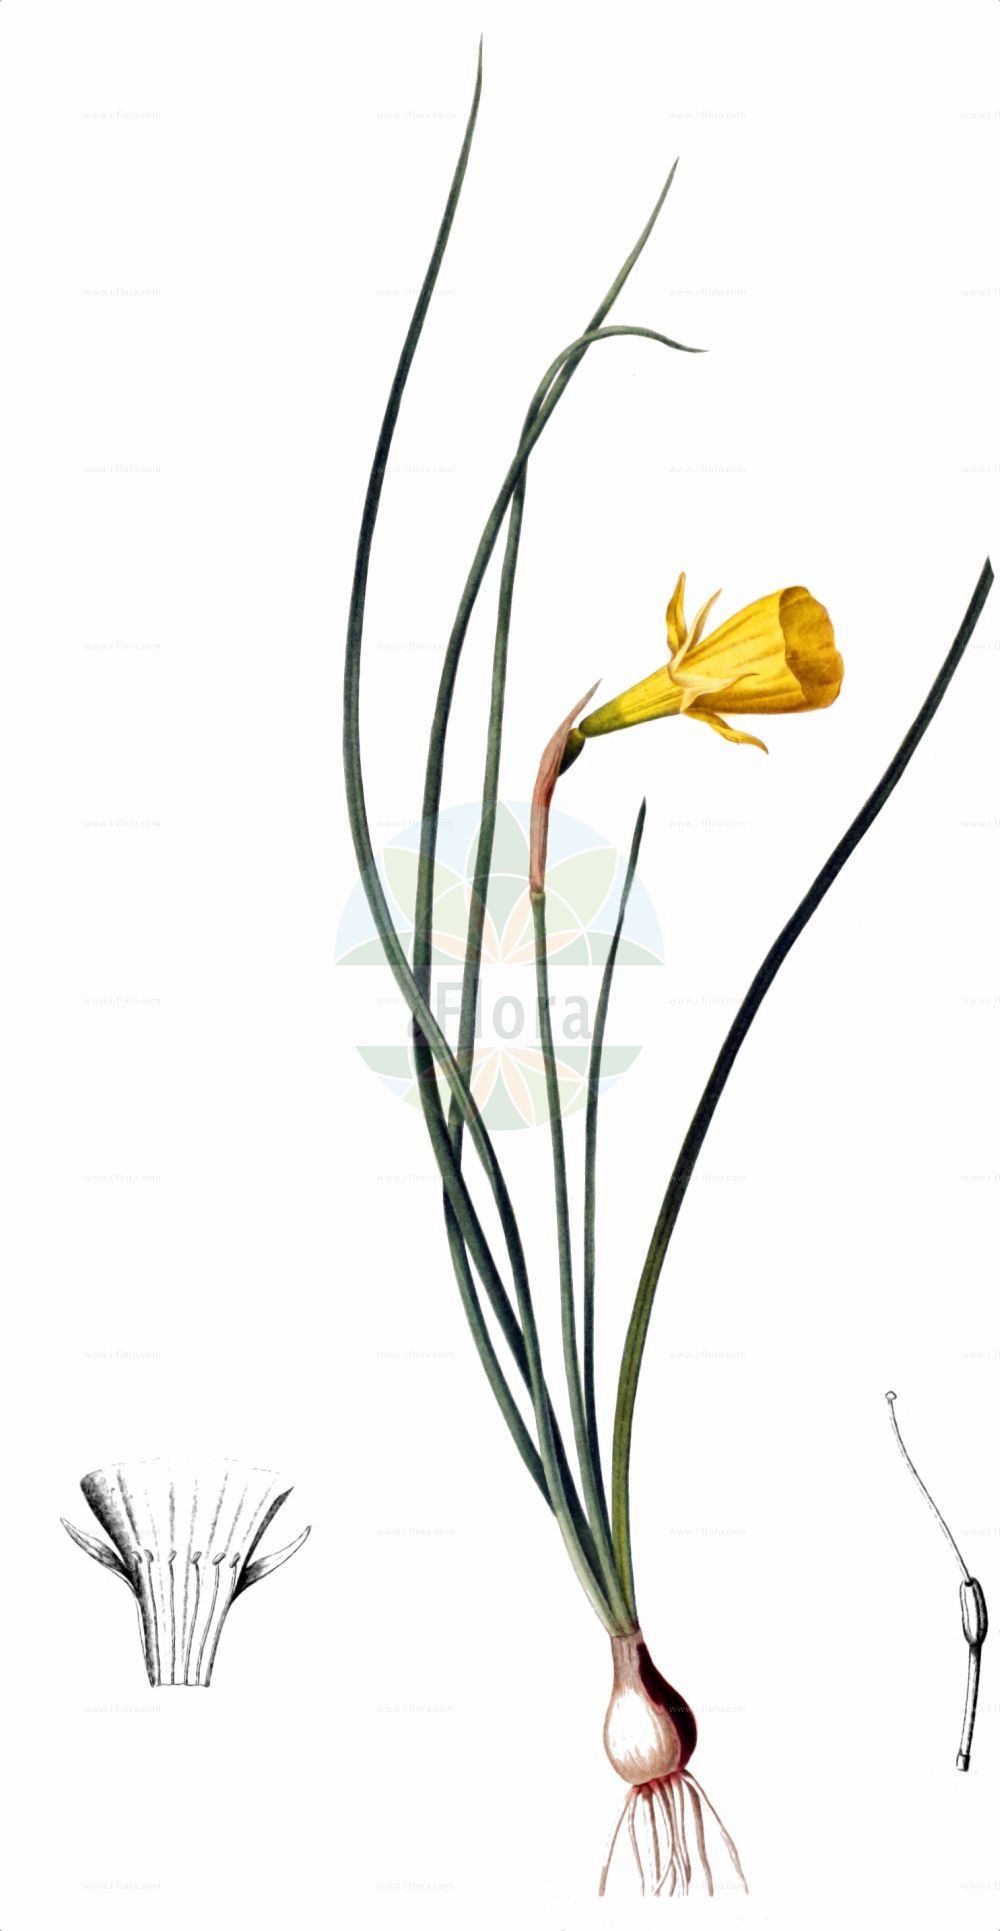 Historische Abbildung von Narcissus bulbocodium (Reifrock-Narzisse - Hoop-petticoat Daffodil). Das Bild zeigt Blatt, Bluete, Frucht und Same. ---- Historical Drawing of Narcissus bulbocodium (Reifrock-Narzisse - Hoop-petticoat Daffodil). The image is showing leaf, flower, fruit and seed.(Narcissus bulbocodium,Reifrock-Narzisse,Hoop-petticoat Daffodil,Corbularia bulbocodium,Narcissus bulbocodium,Narcissus bulbocodium var. genuinus,Reifrock-Narzisse,Hoop-petticoat Daffodil,Hoop Petticoat,Petticoat Daffodil,Jonquil,Narcissus,Narzisse,Daffodils,Amaryllidaceae,Narzissengewächse,Amaryllis family,Blatt,Bluete,Frucht,Same,leaf,flower,fruit,seed)